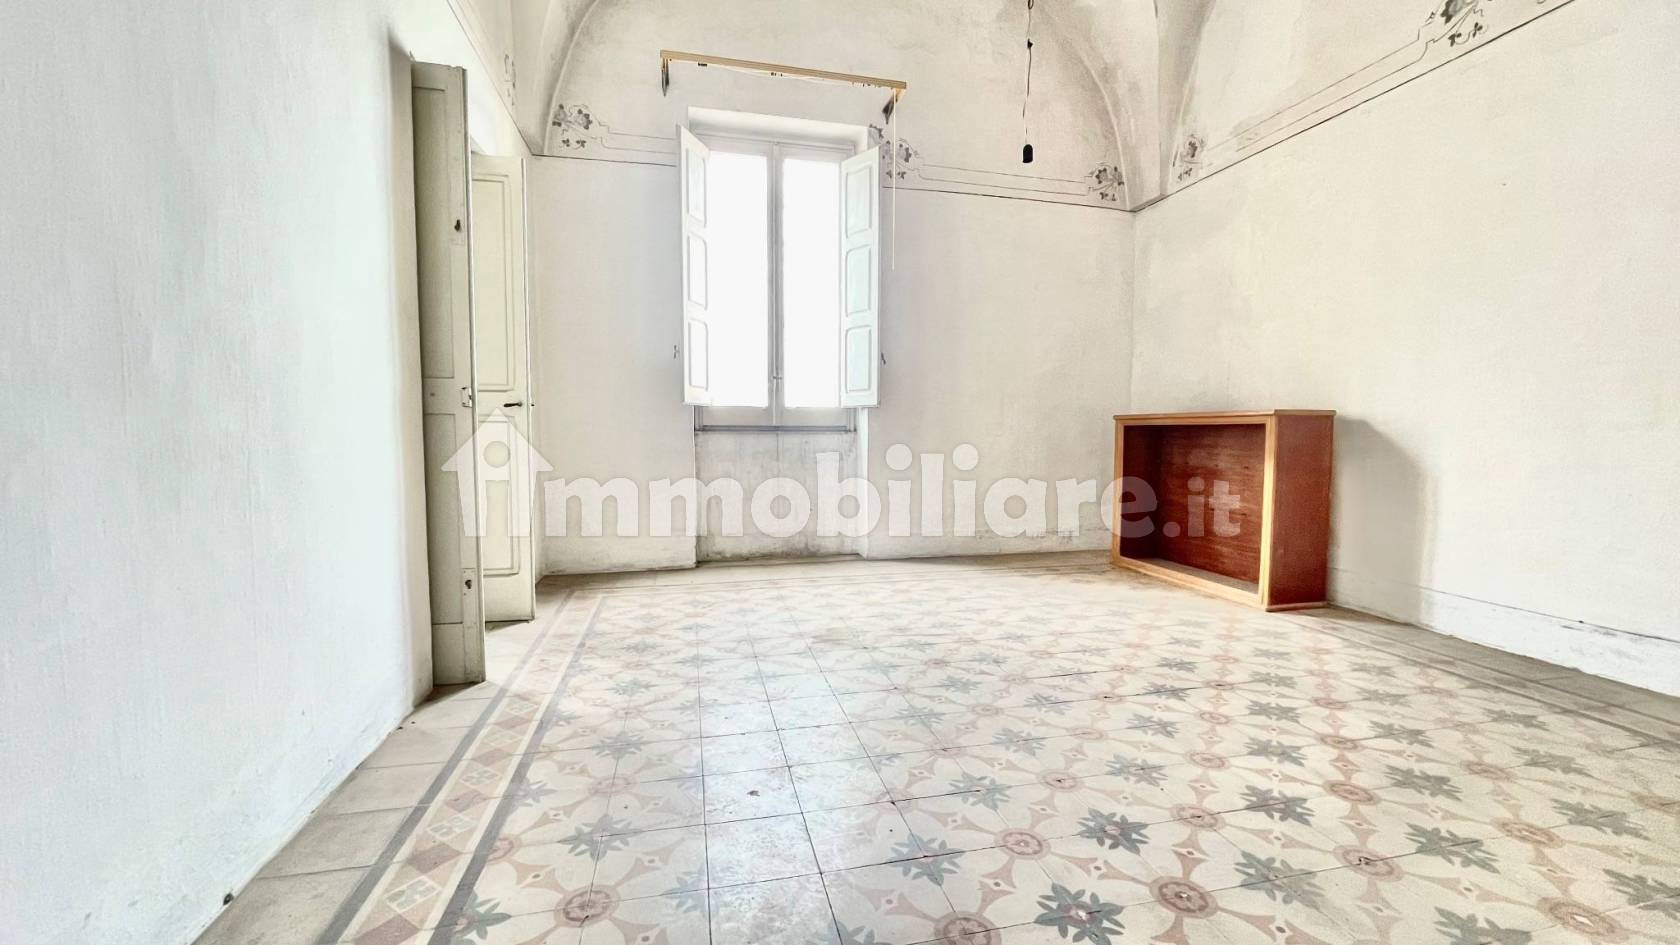 Appartamenti all'ultimo piano in vendita Monteroni di Lecce - Immobiliare.it